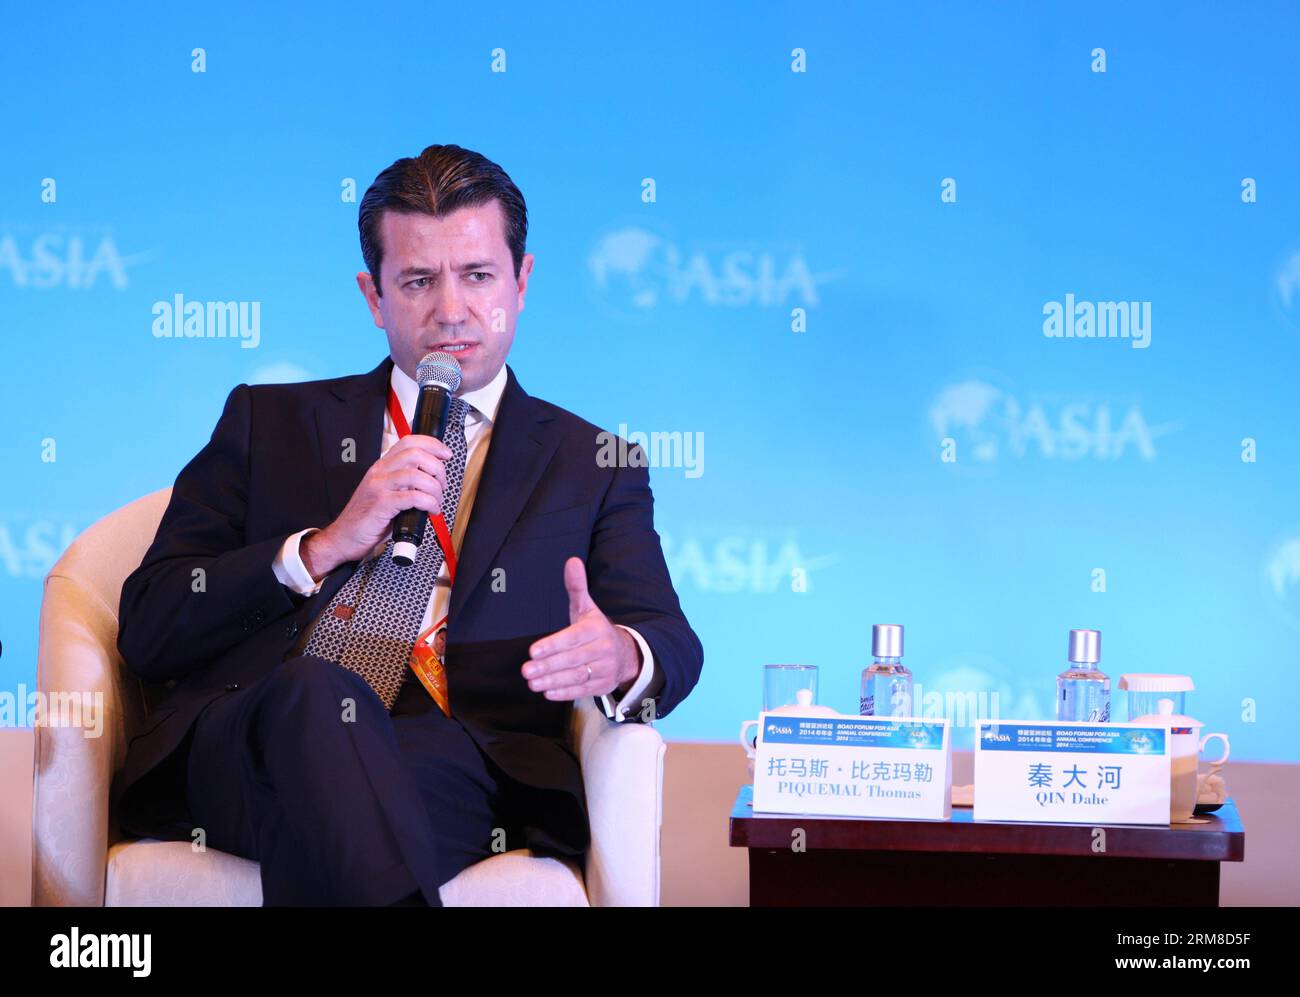 (140409) -- BOAO, 9 aprile 2014 (Xinhua) -- Thomas Piquemal, Chief Financial Officer di Electricite De France, parla in un forum sui nuovi risultati sui cambiamenti climatici durante la conferenza annuale del Boao Forum for Asia (BFA) 2014 a Boao, nella provincia di Hainan della Cina meridionale, 9 aprile 2014.(Xinhua/Wang Jingqiang) (zkr) CHINA-BOAO-BFA 2014-CLIMATE CHANGE(CN) PUBLICATIONxNOTxINxCHN Boao 9 aprile 2014 XINHUA Thomas, Chief Financial Officer di Electricite de France, parla A un Forum SUI nuovi risultati SUI cambiamenti CLIMATICI durante la Conferenza annuale 2014 di Boao Forum for Asia BfA a Boao nella provincia di Hainan nella Cina meridionale Foto Stock